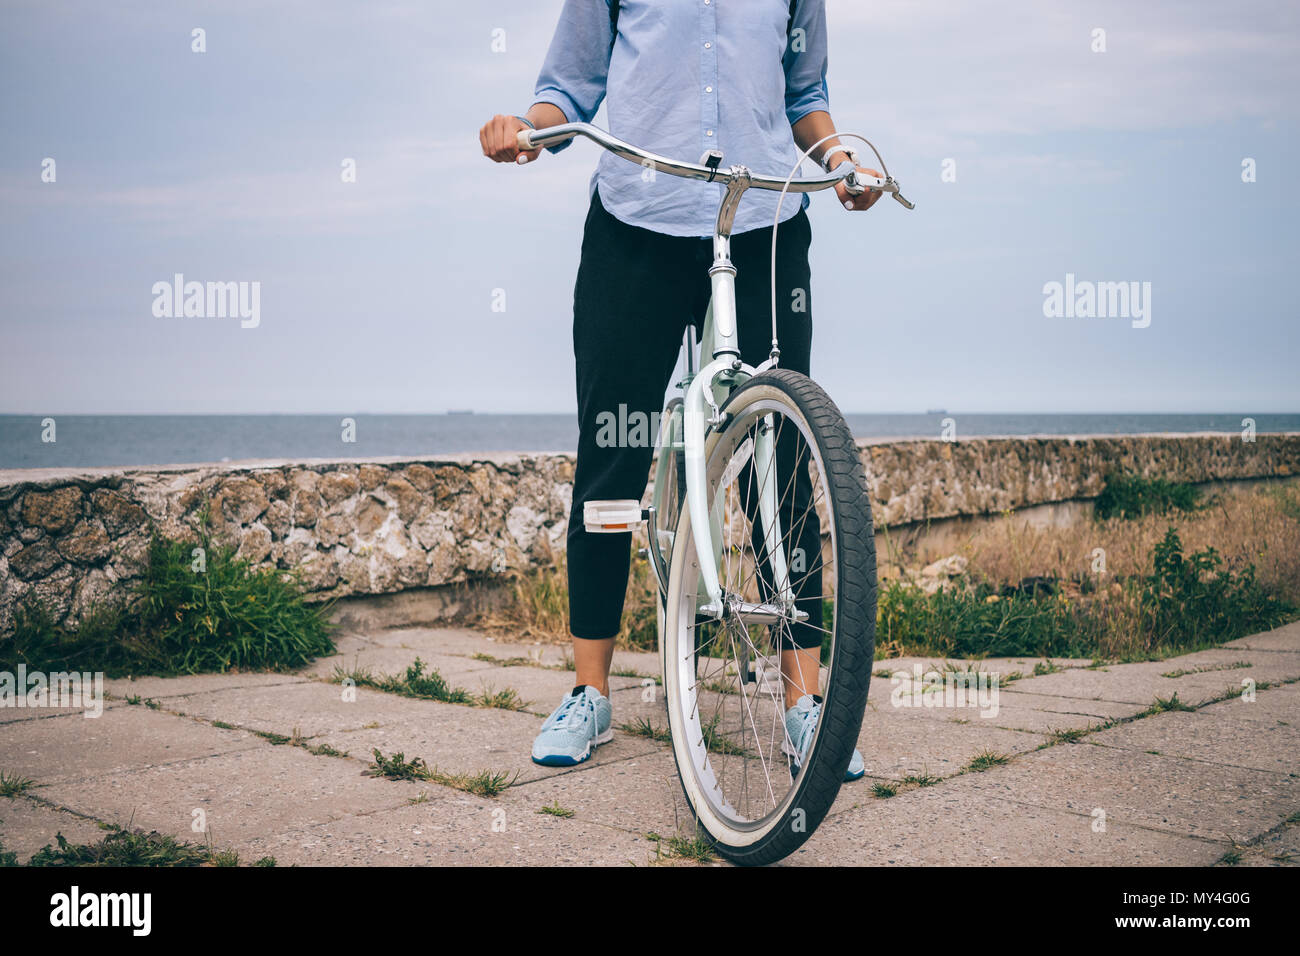 Nicht erkennbare Junge weibliche im casual Outfit steht neben ihr Cruiser  Fahrrad Lenker halten. Nahaufnahme der Frau auf dem Fahrrad in der Nähe des  Meeres Stockfotografie - Alamy